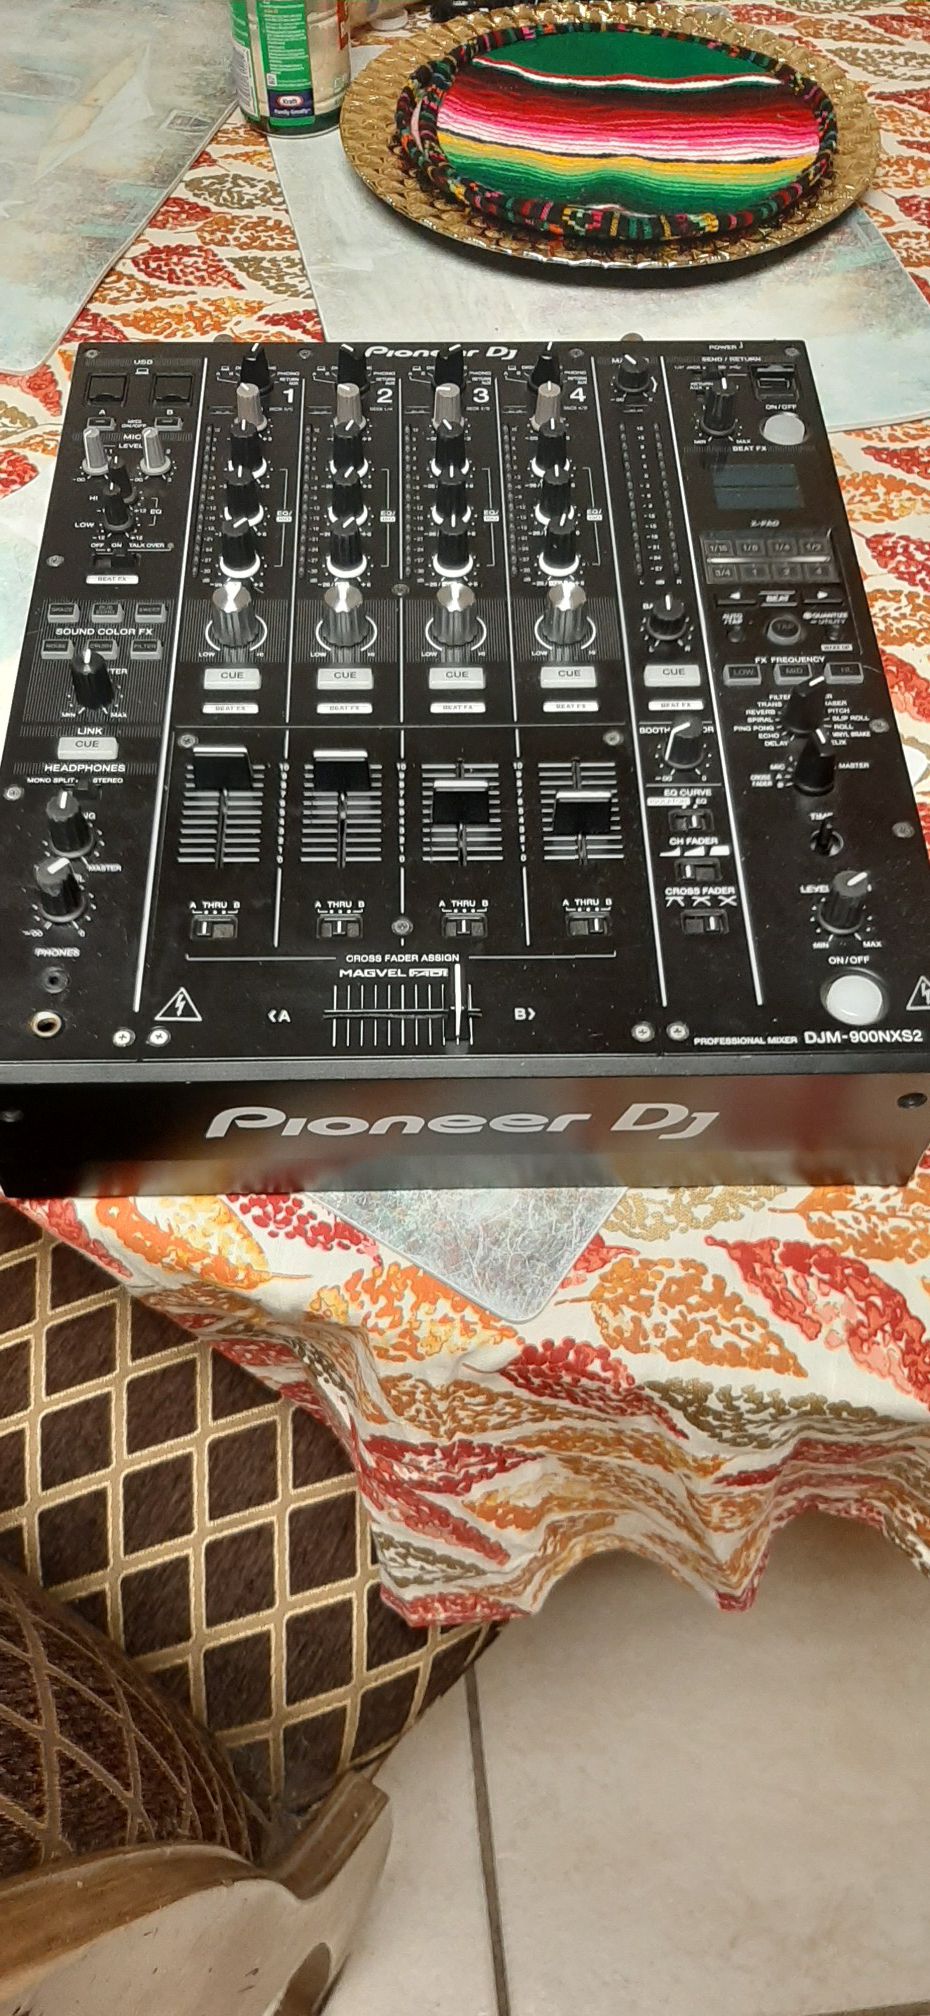 Pioneer dj equipment/ ecipo de sonido